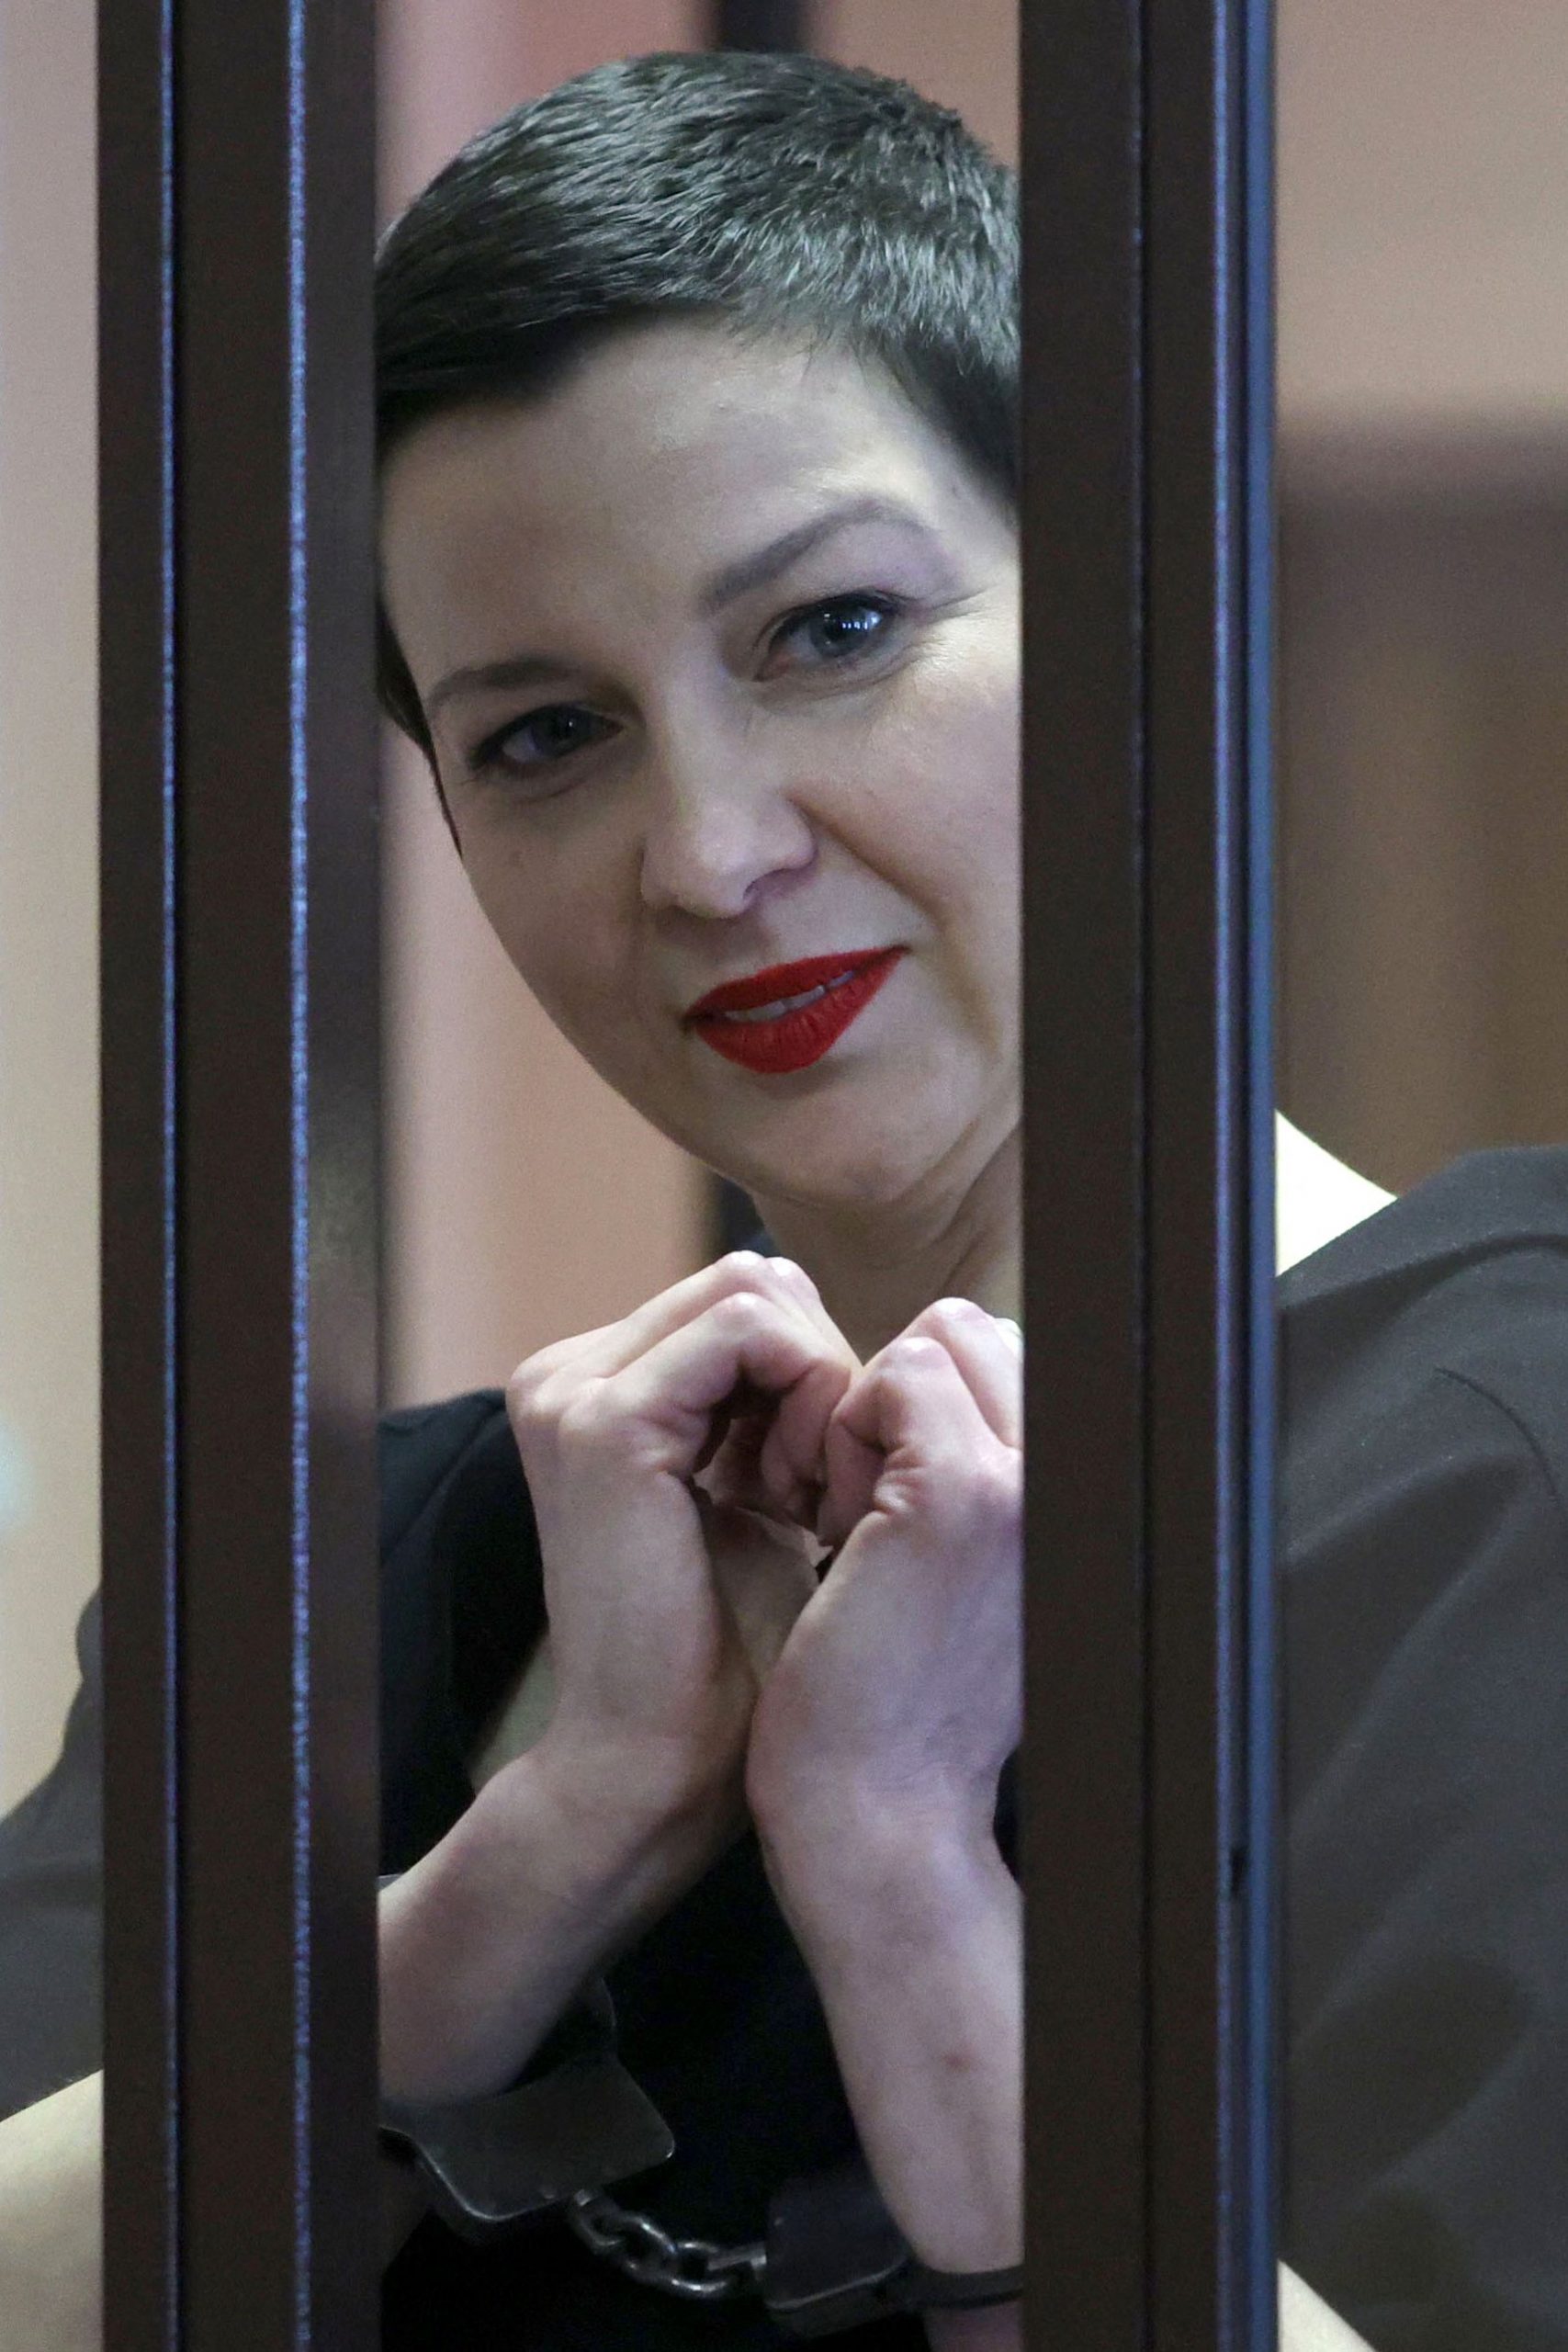 白俄去年大示威领袖 遭判11年徒刑